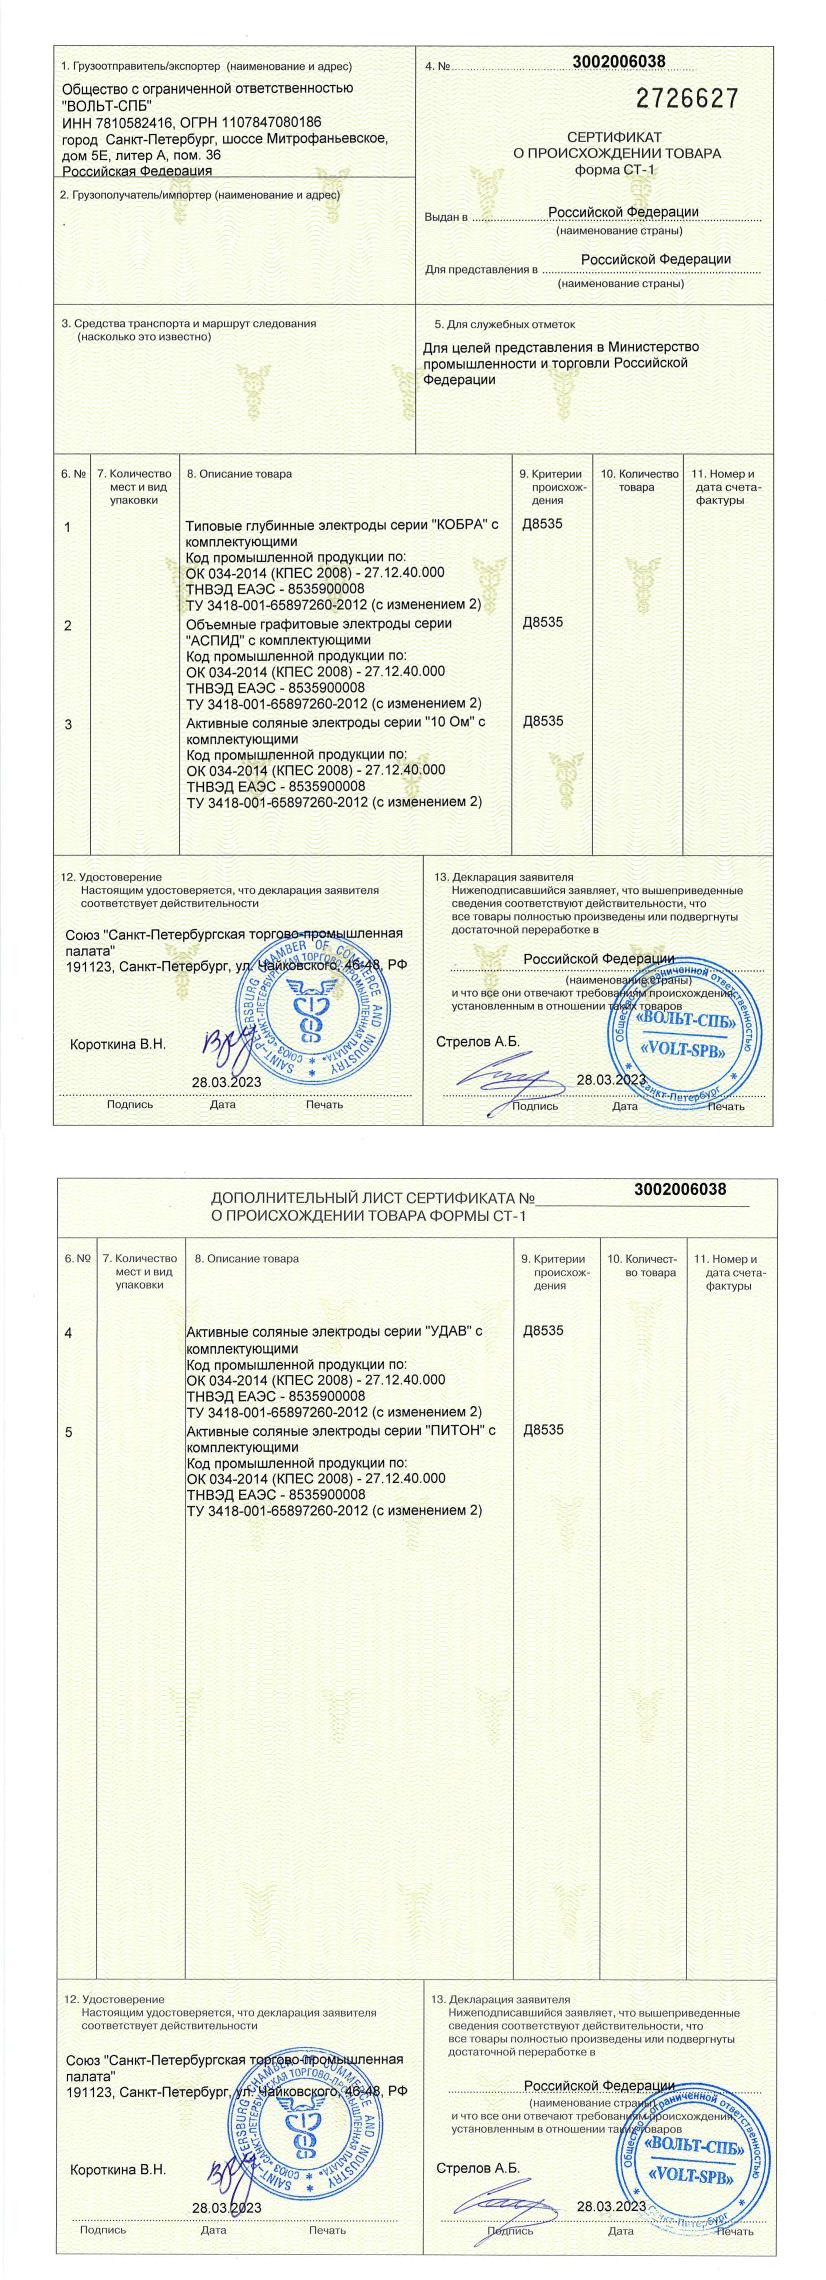 Сертификат о происхождении товара по форме СТ-1 («УДАВ», «ПИТОН», «10 Ом», «АСПИД»)